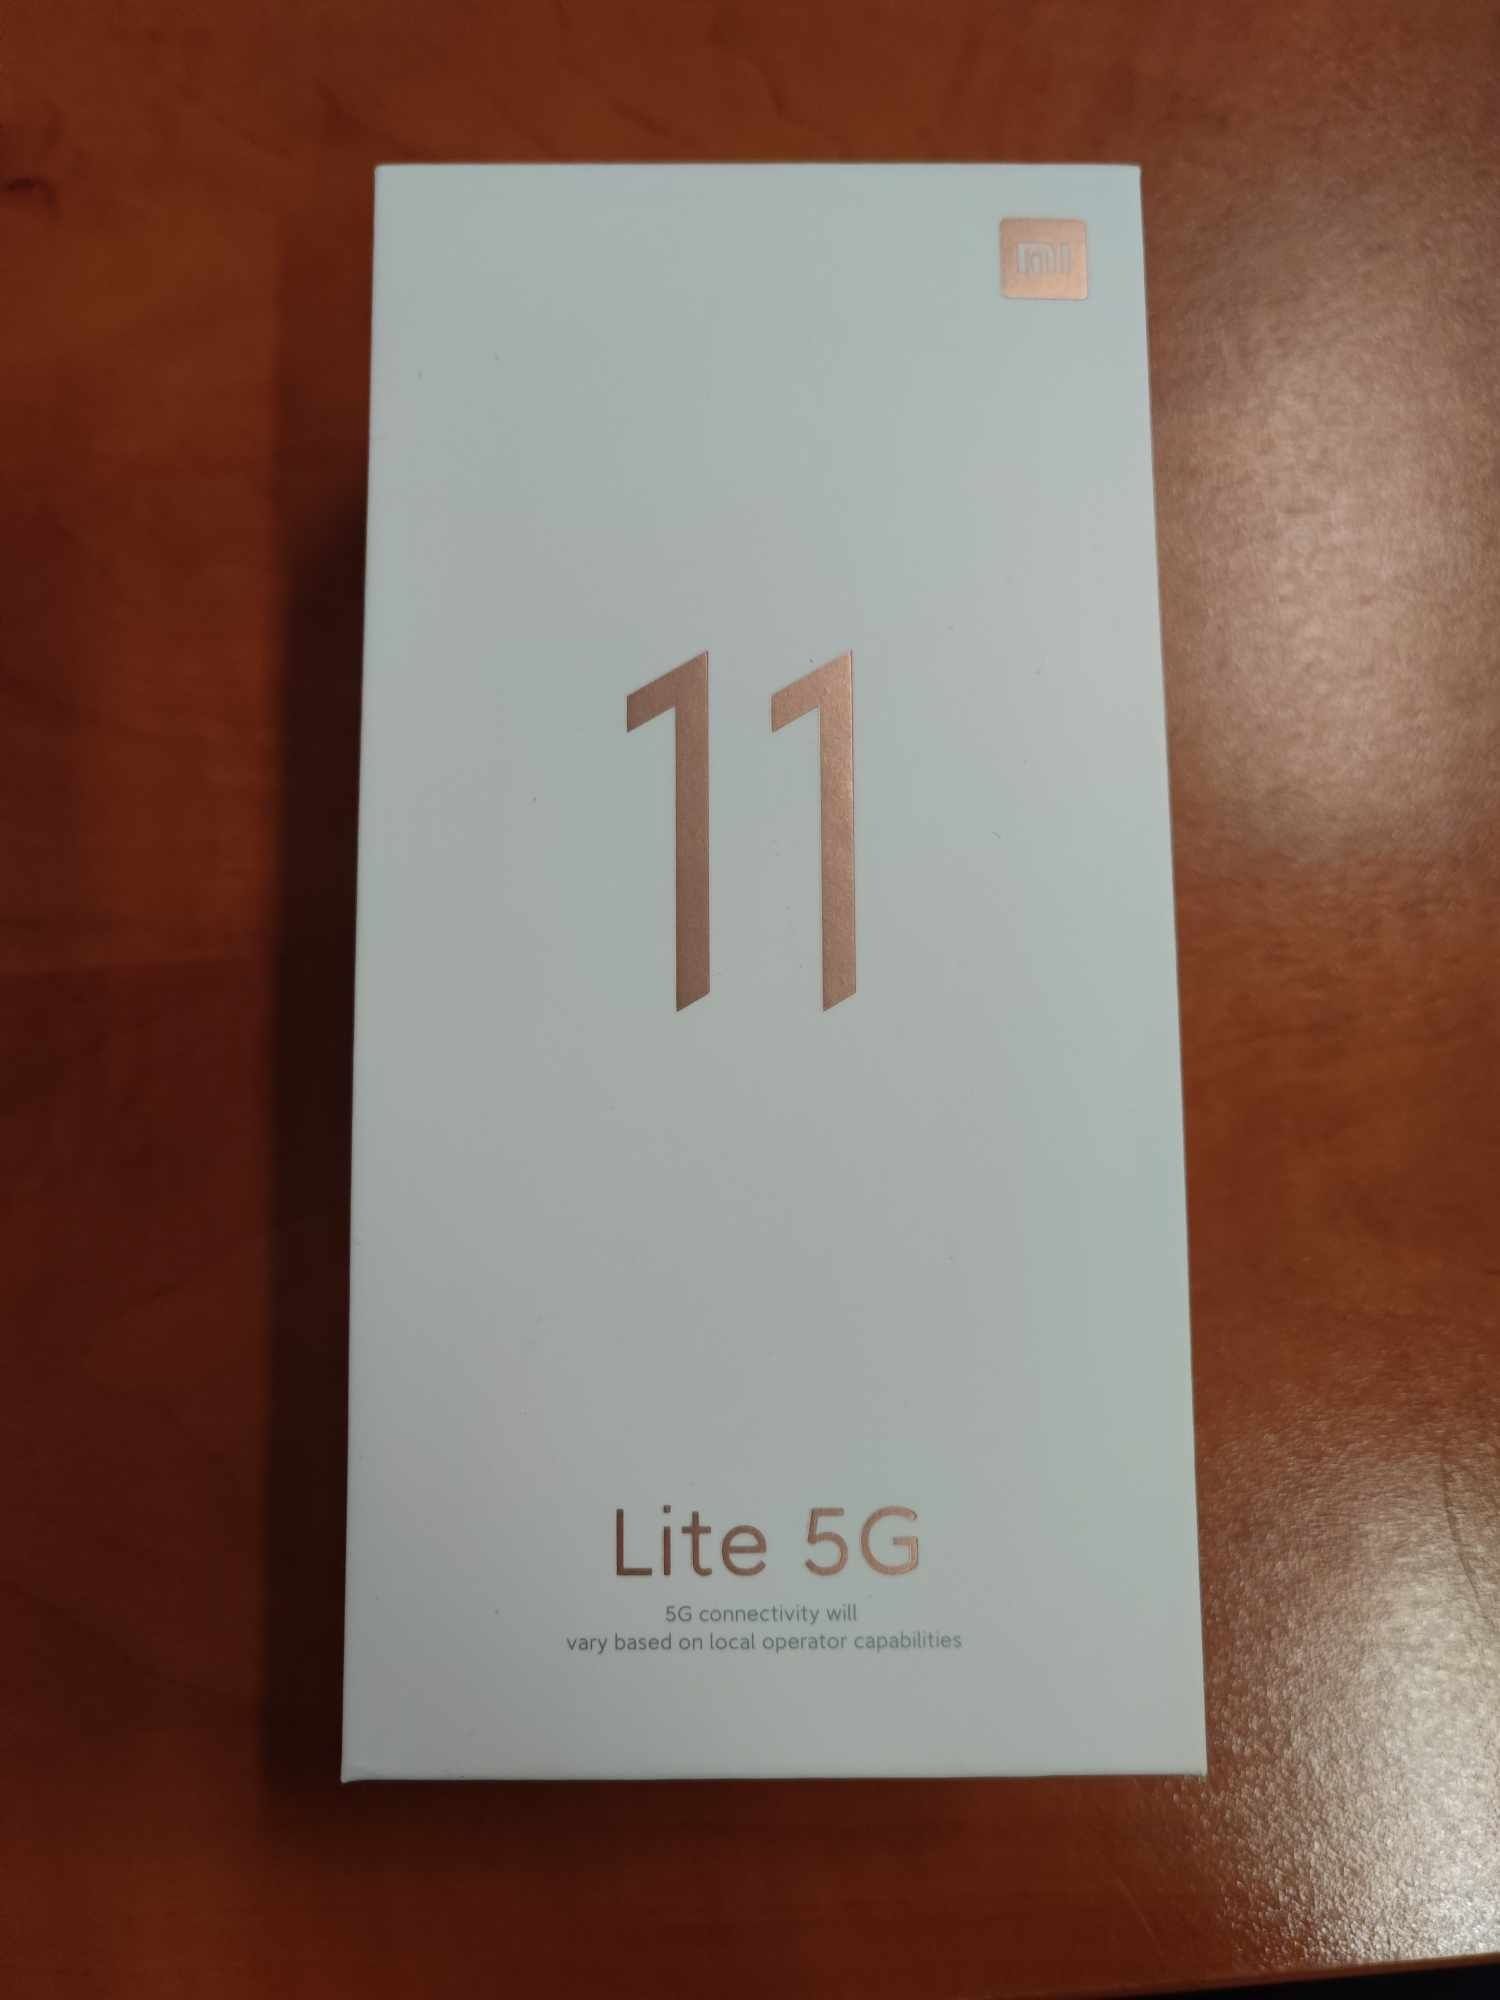 Telefon Xiaomi Mi 11 Lite 5G 6/128 nowy